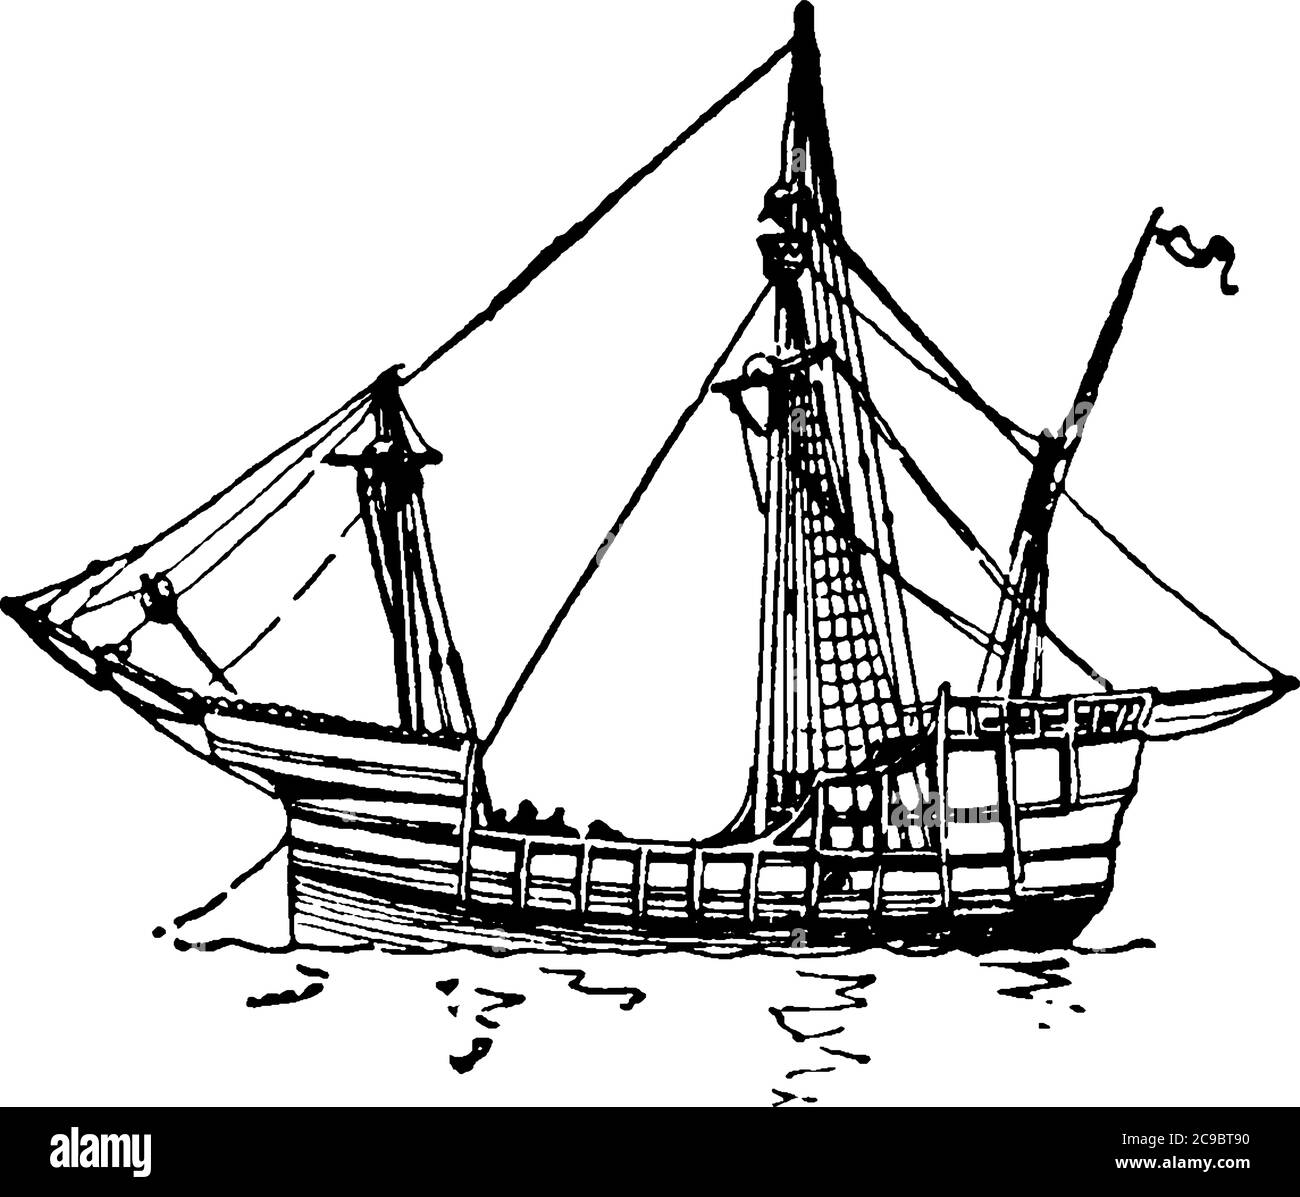 Este es el barco penta que es el más rápido de los tres barcos que fueron  utilizados por Cristóbal Colón en 1492, dibujo de línea vintage o grabado  ilustra Imagen Vector de